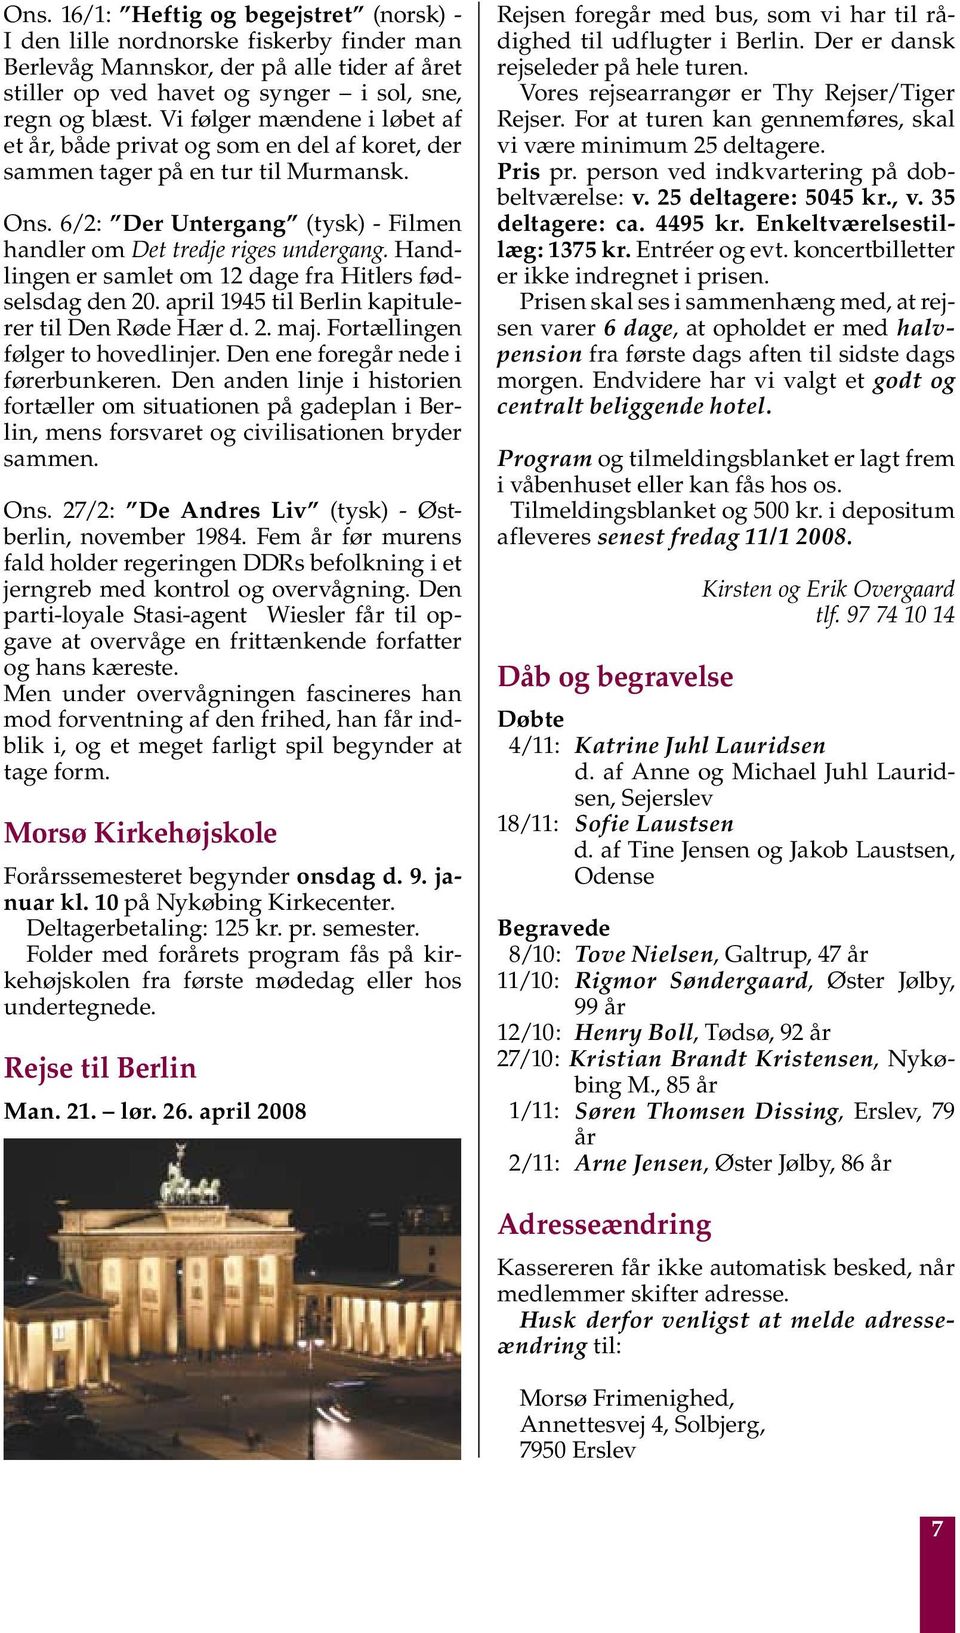 Ansgarsbladet. Velkommen igen. 26. årgang Nr. 1 December 2007 af Morsø Frimenighed - PDF Gratis download